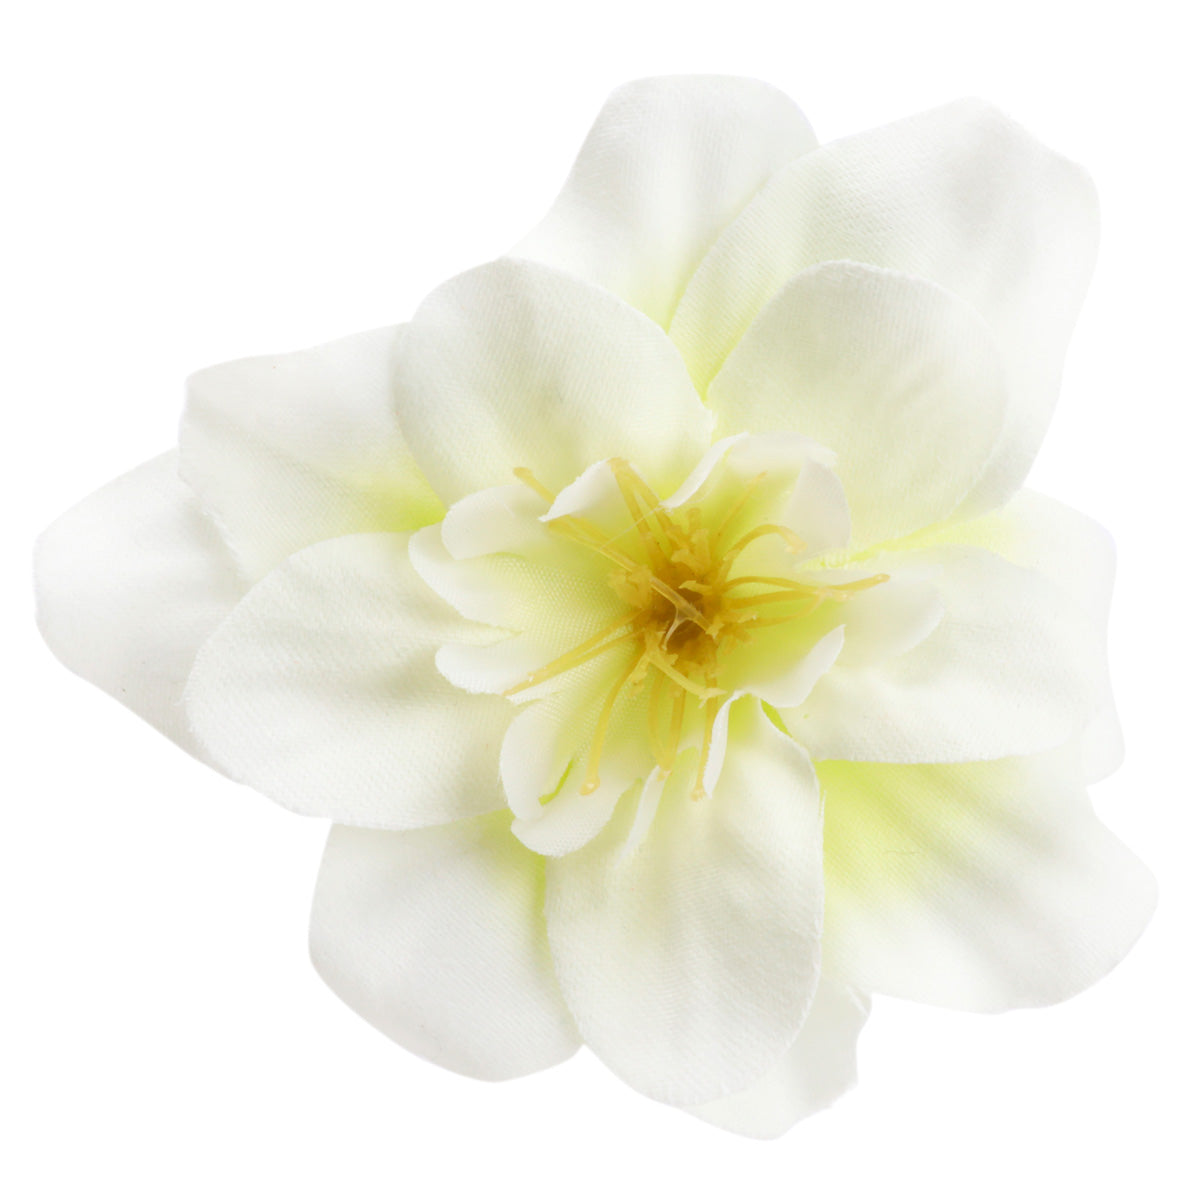 Pehmeän valkoinen kukka kampaukseen 105020032701 | Ninja.fi